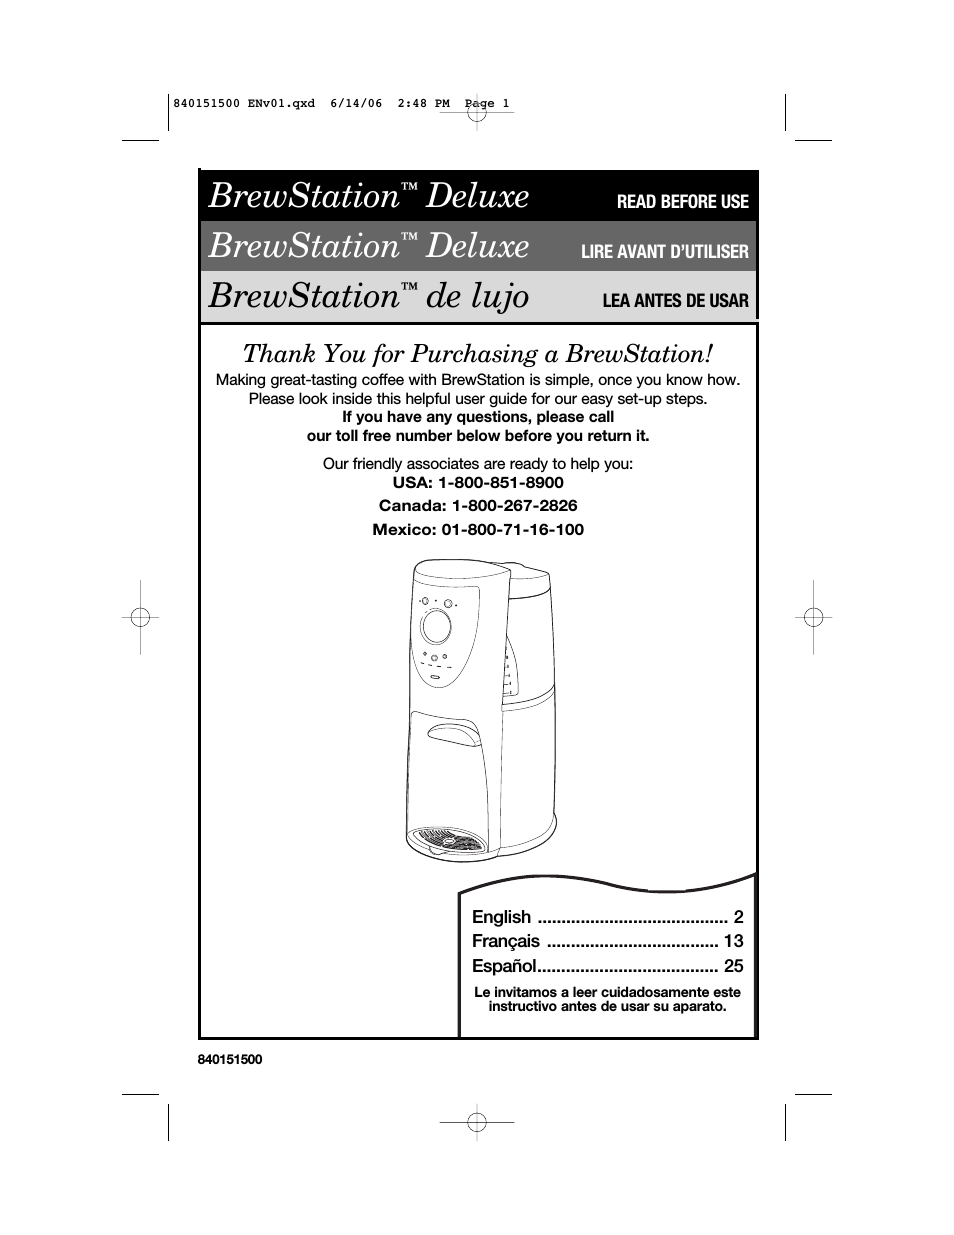 BrewStation Deluxe 840151500